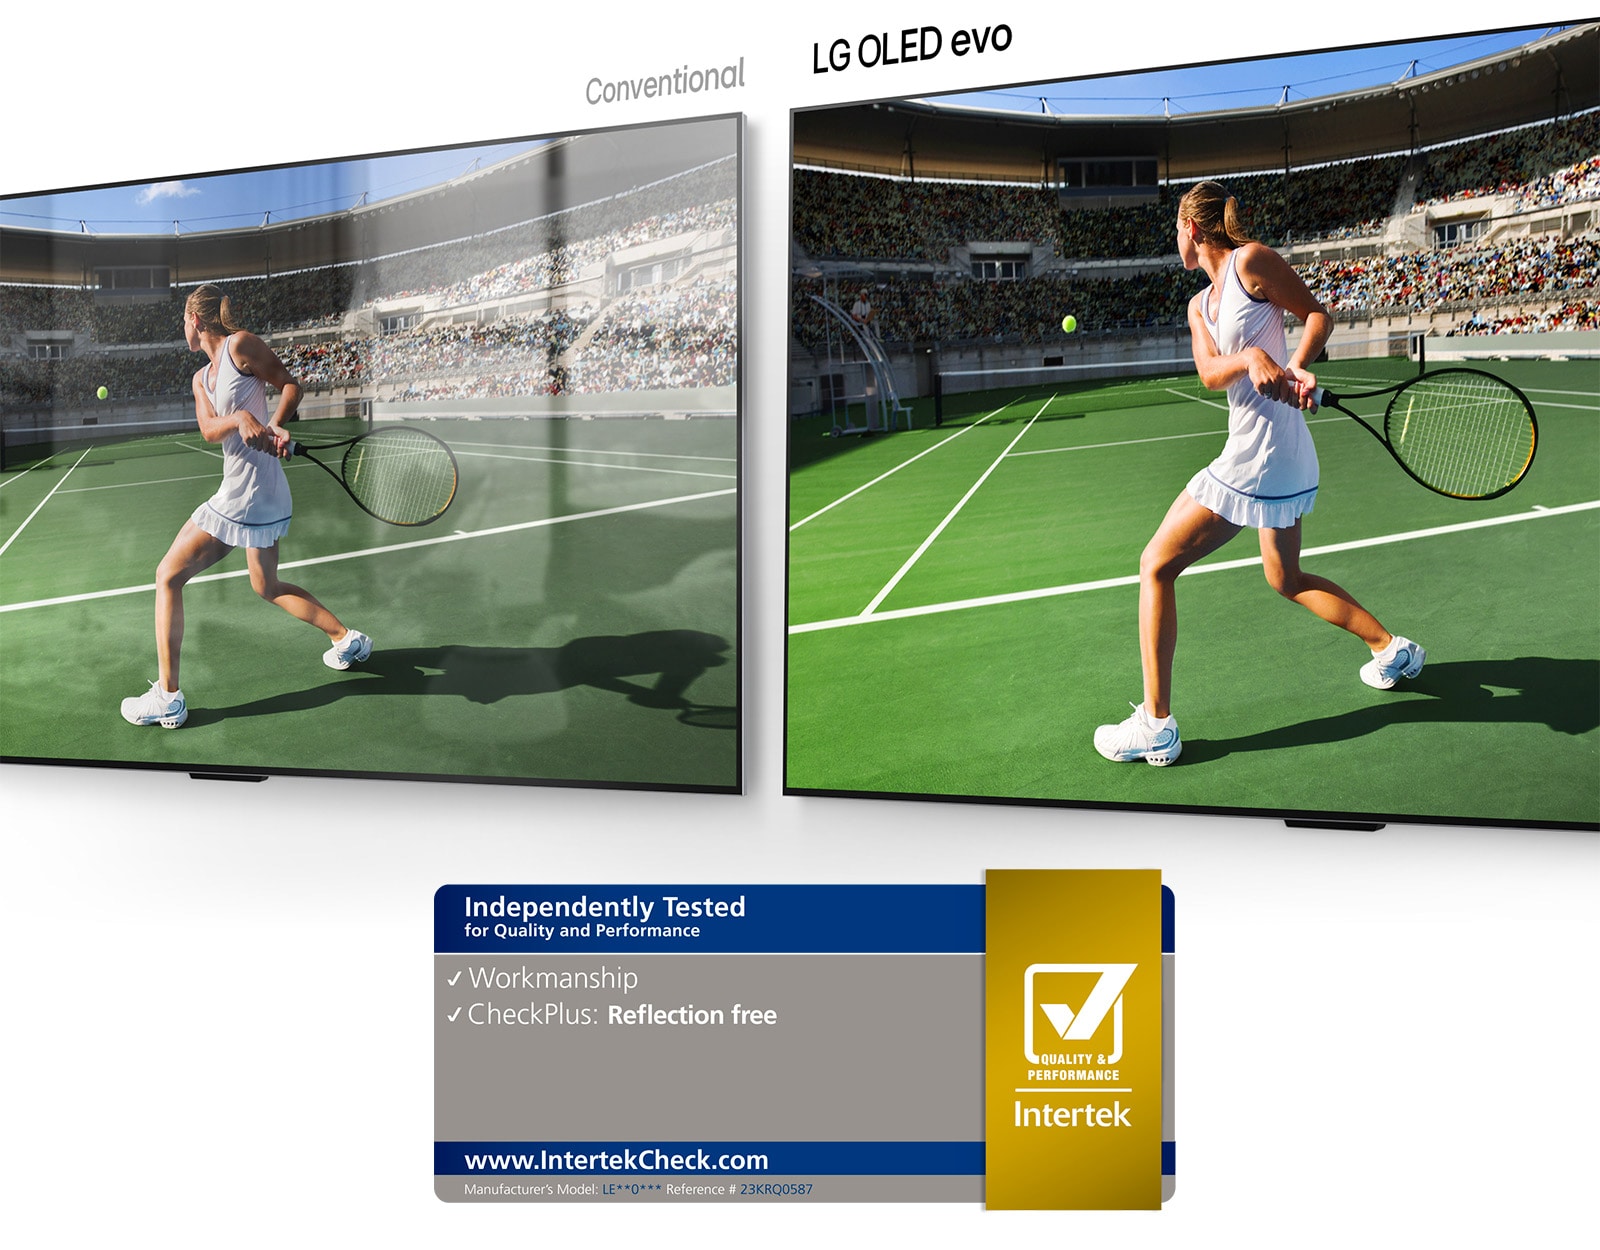 משמאל, טלוויזיה רגילה מציגה טניסאי באצטדיון עם השתקפות של חדר על המסך. מימין, טלוויזיית LG OLED evo M4 מציגה את אותה תמונה של שחקן טניס באצטדיון ללא השתקפות של חדר, והתמונה נראית בהירה וצבעונית יותר.